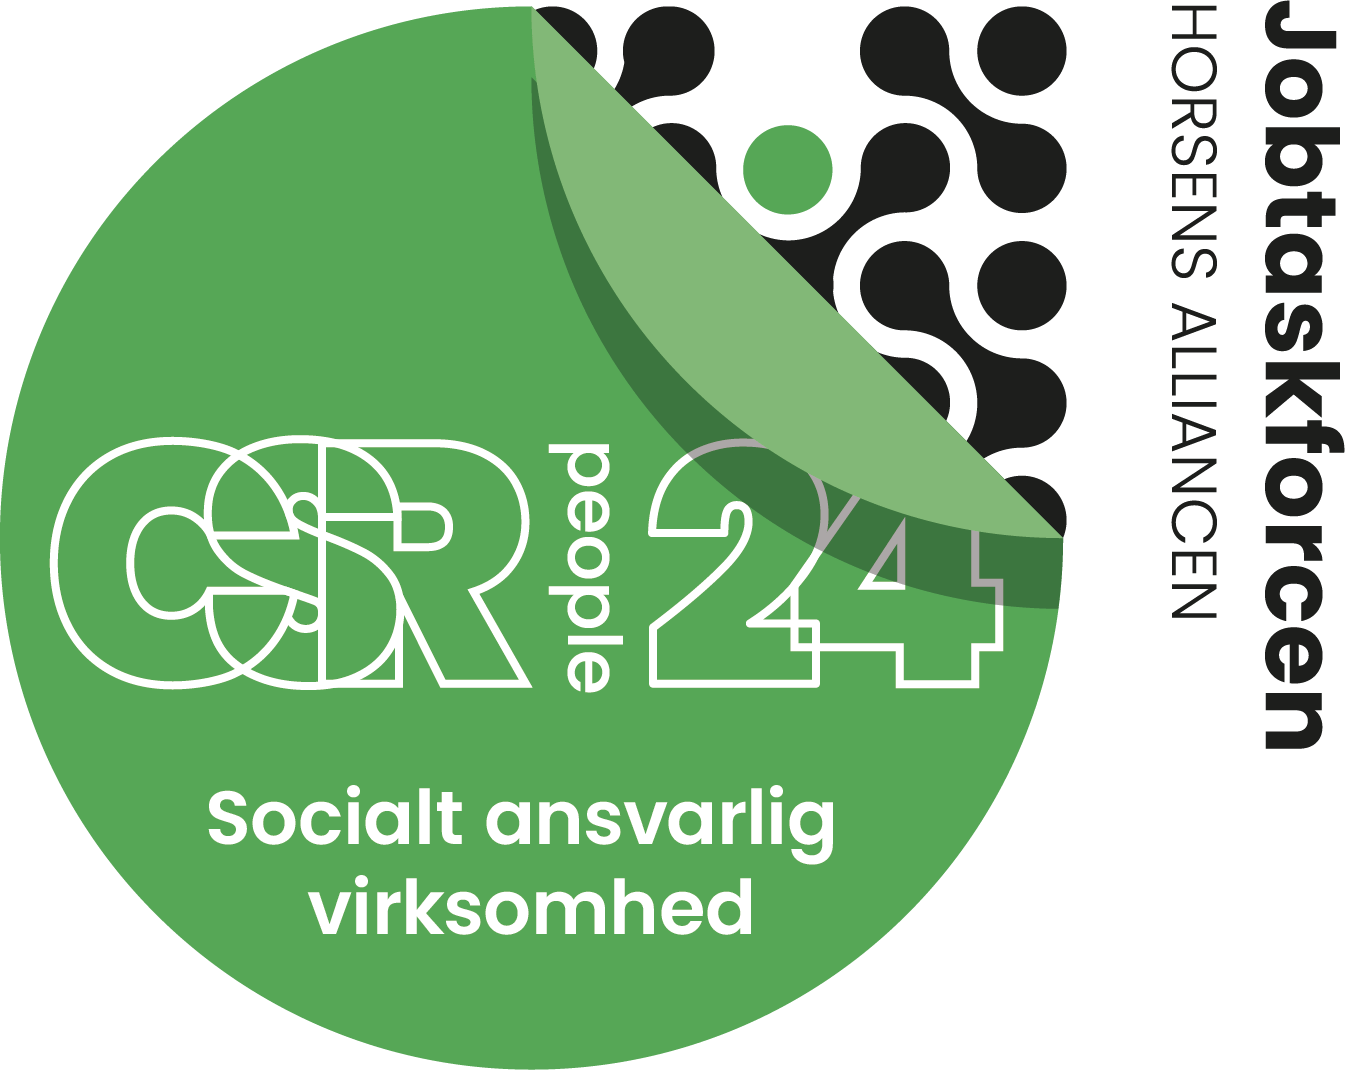 Rundt badge CSR people certifikat